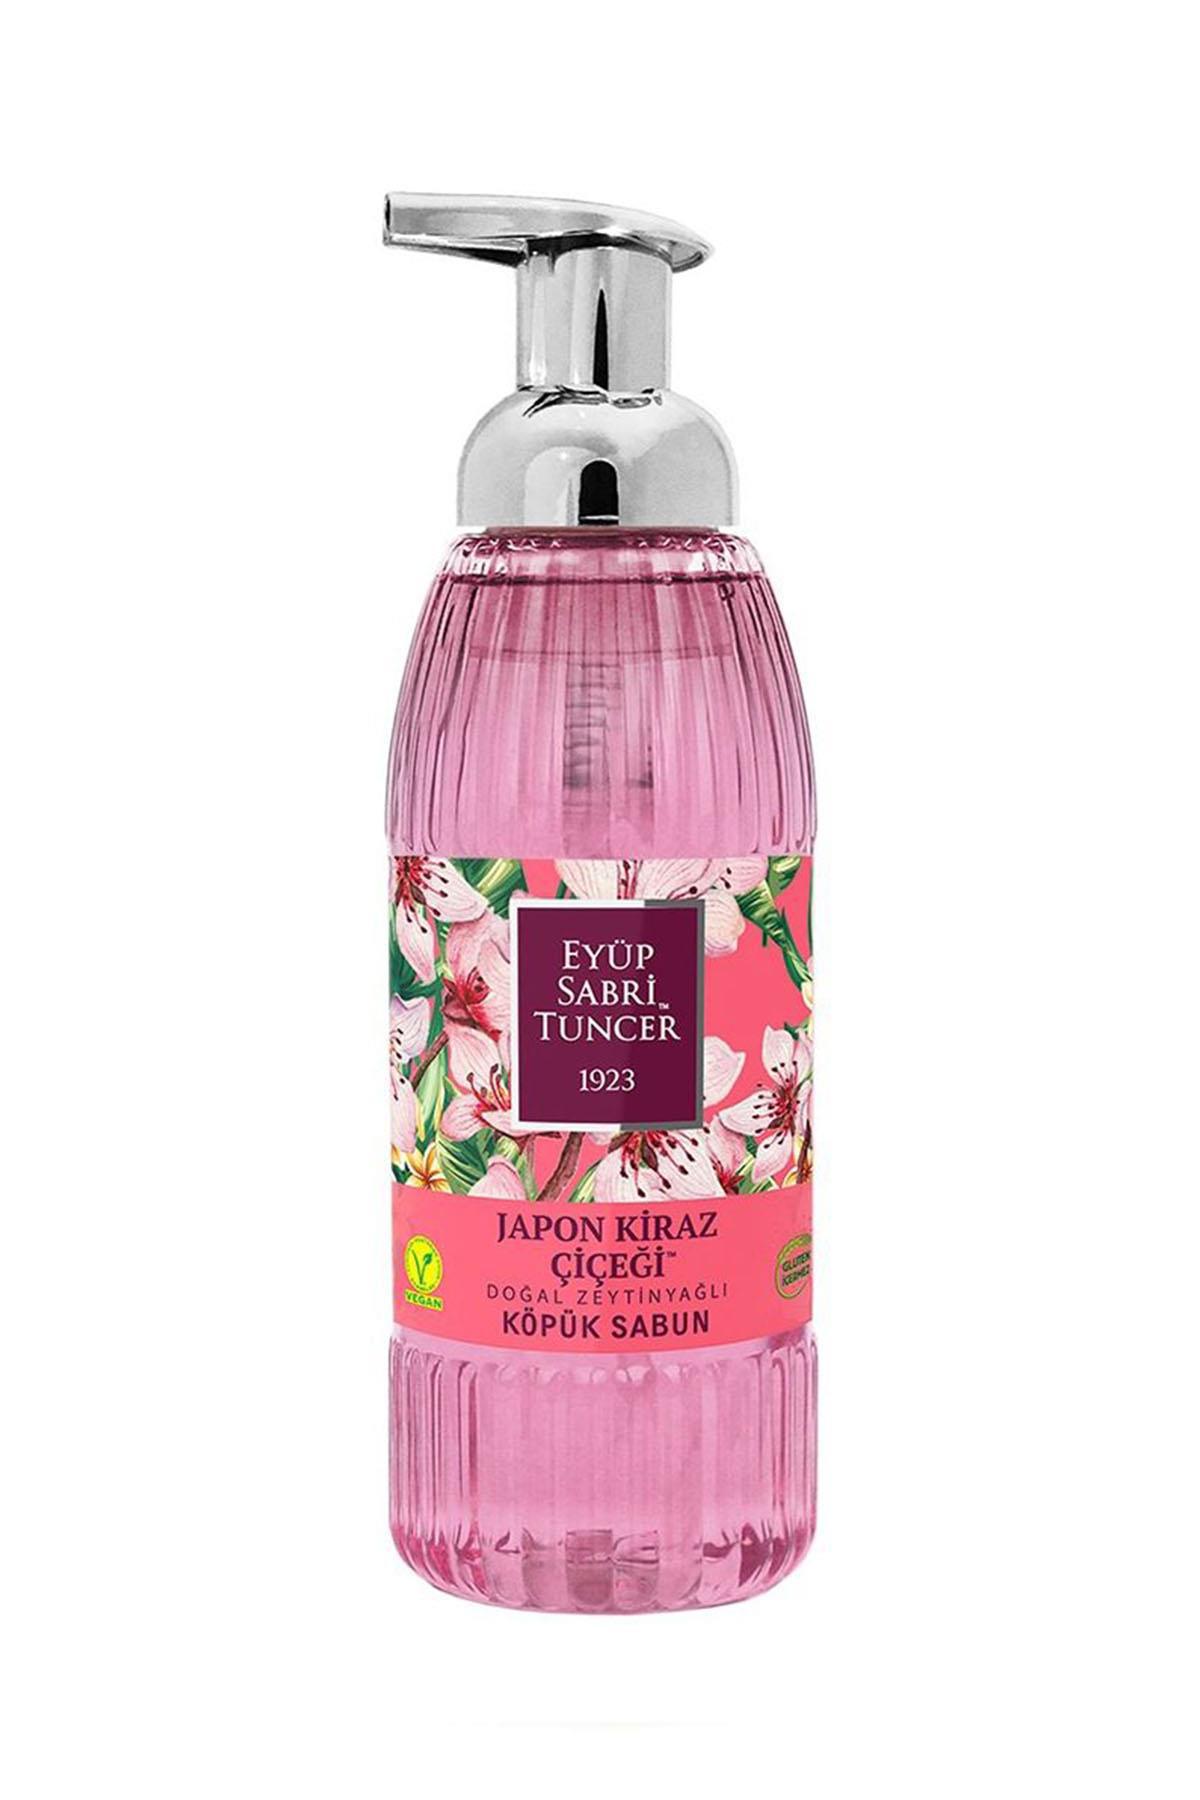 Eyüp Sabri Tuncer Japon Kiraz Çiçeği Nemlendiricili Köpük Sıvı Sabun 500 ml Tekli